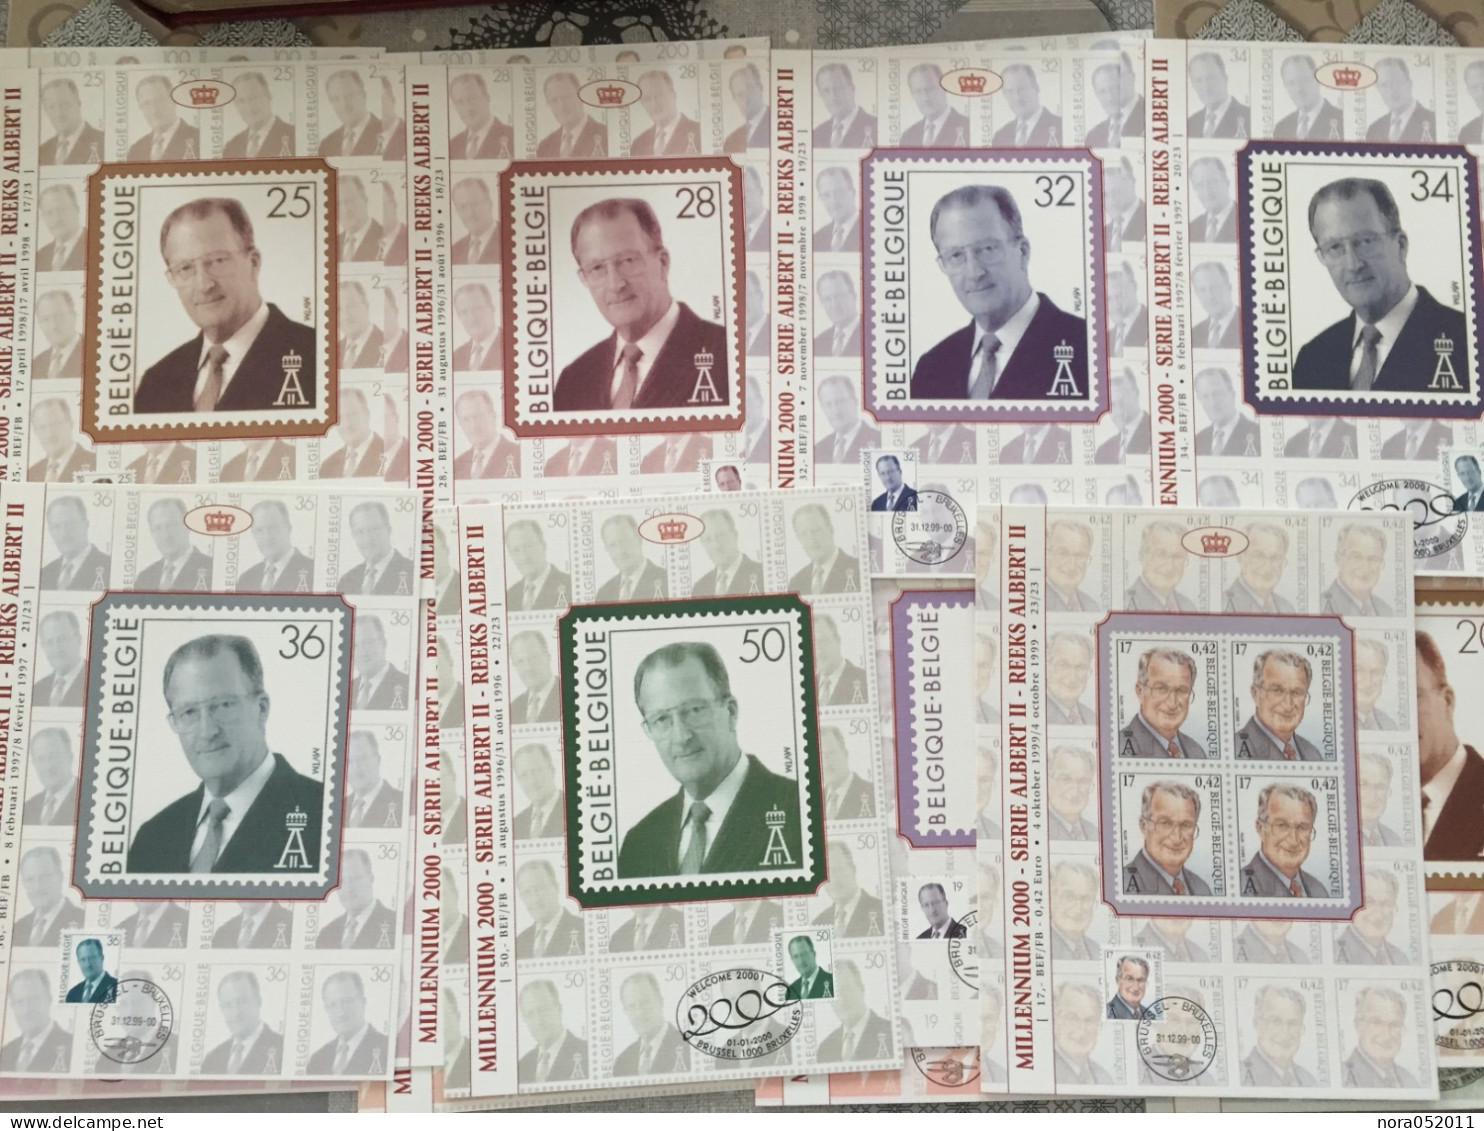 Belgique Thématique sur la Royauté Belge, timbres, blocs + coffret souvenir super état